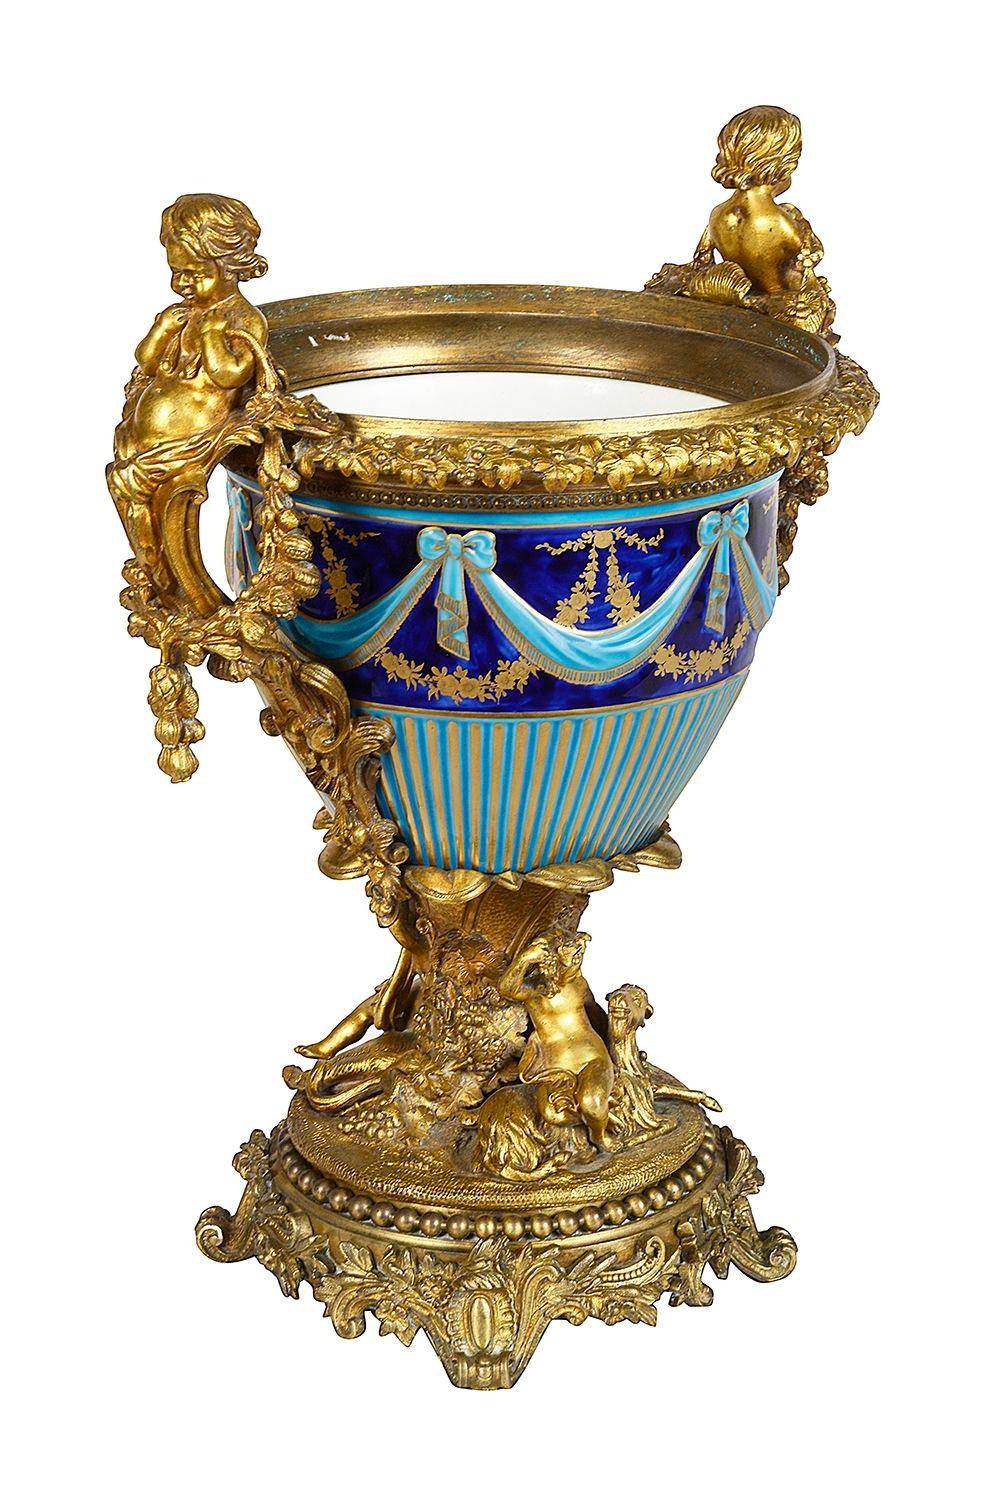 Eine kobalt- und türkisblaue Majolika-Porzellanurne von sehr guter Qualität aus dem 19. Jahrhundert, mit wunderbaren vergoldeten Ormolu-Formen und Montierungen von Putten, die Blumengirlanden zwischen Weinreben halten.
Los 76 60676 DTNSK